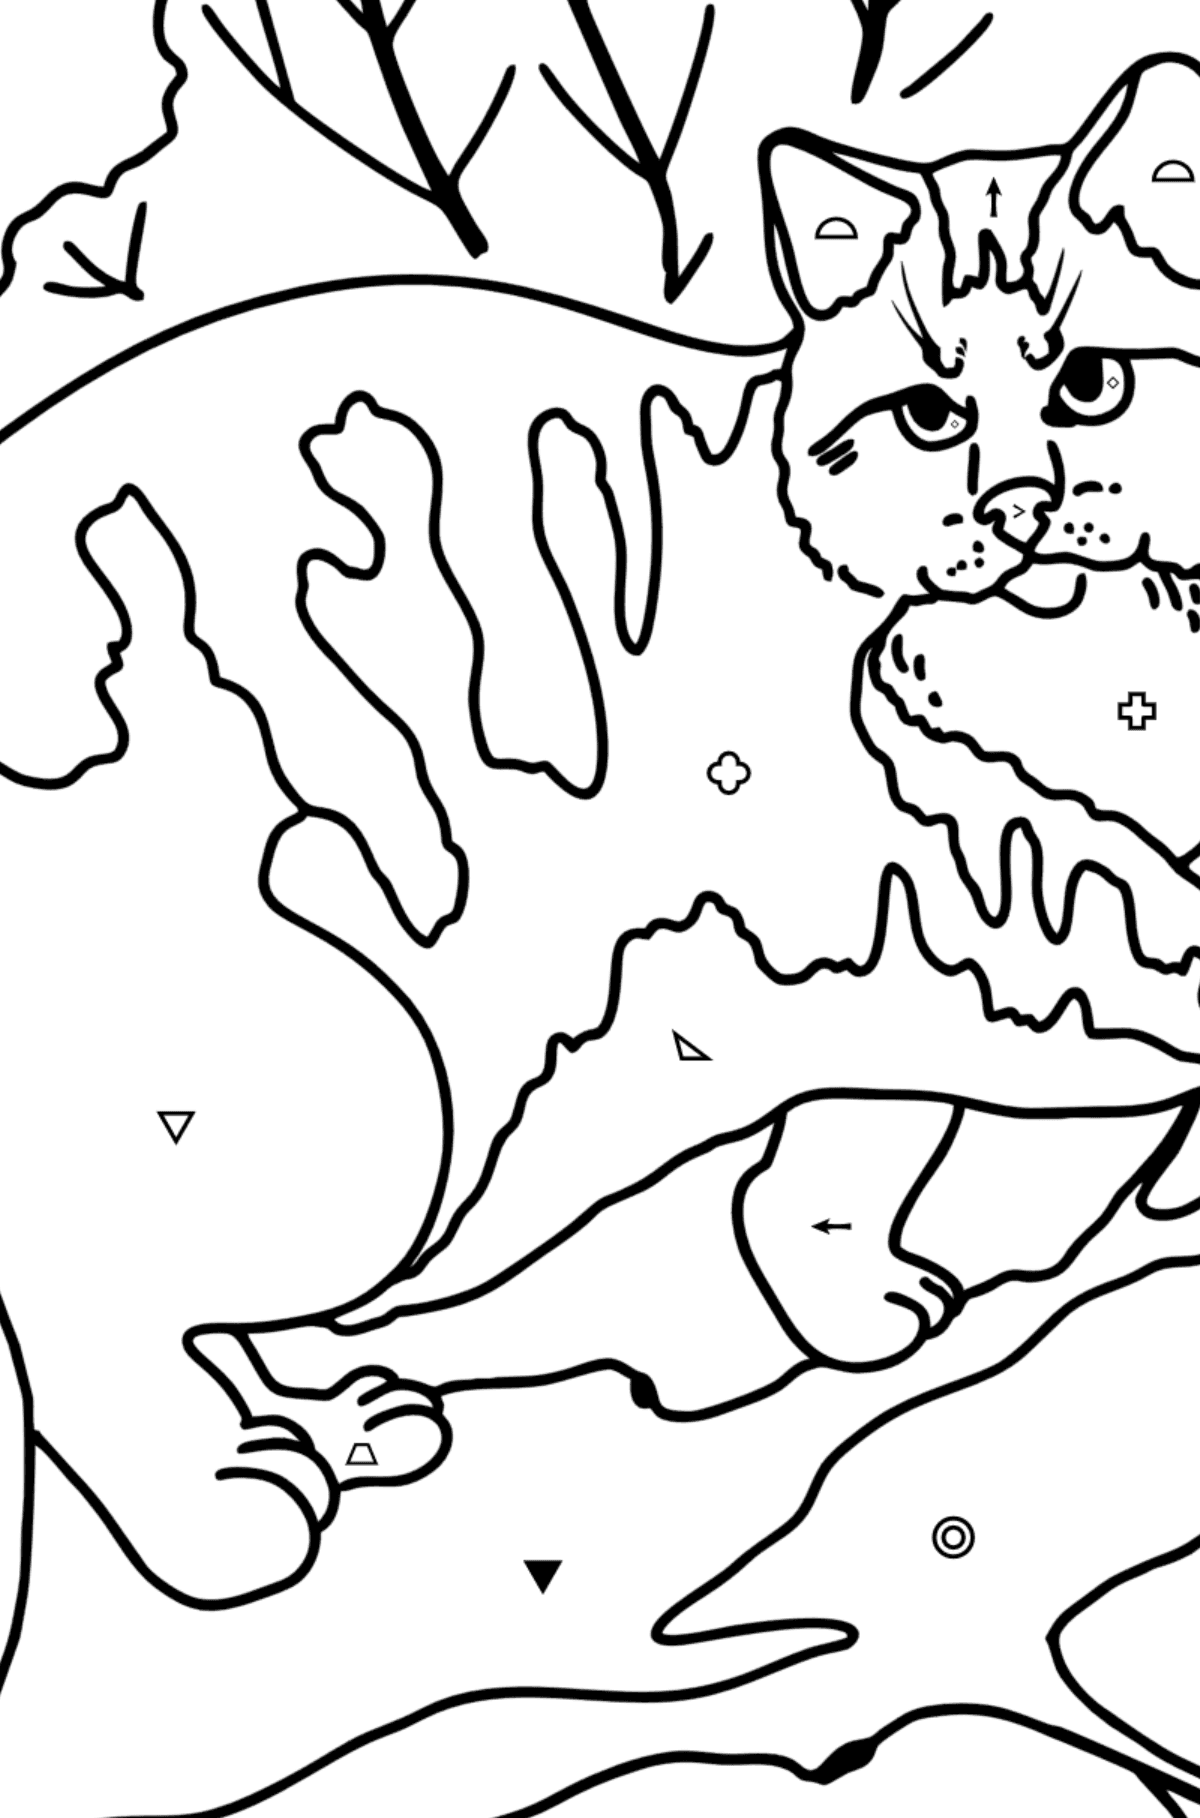 Coloriage - Chat de la forêt sauvage - Coloriage par Symboles pour les Enfants